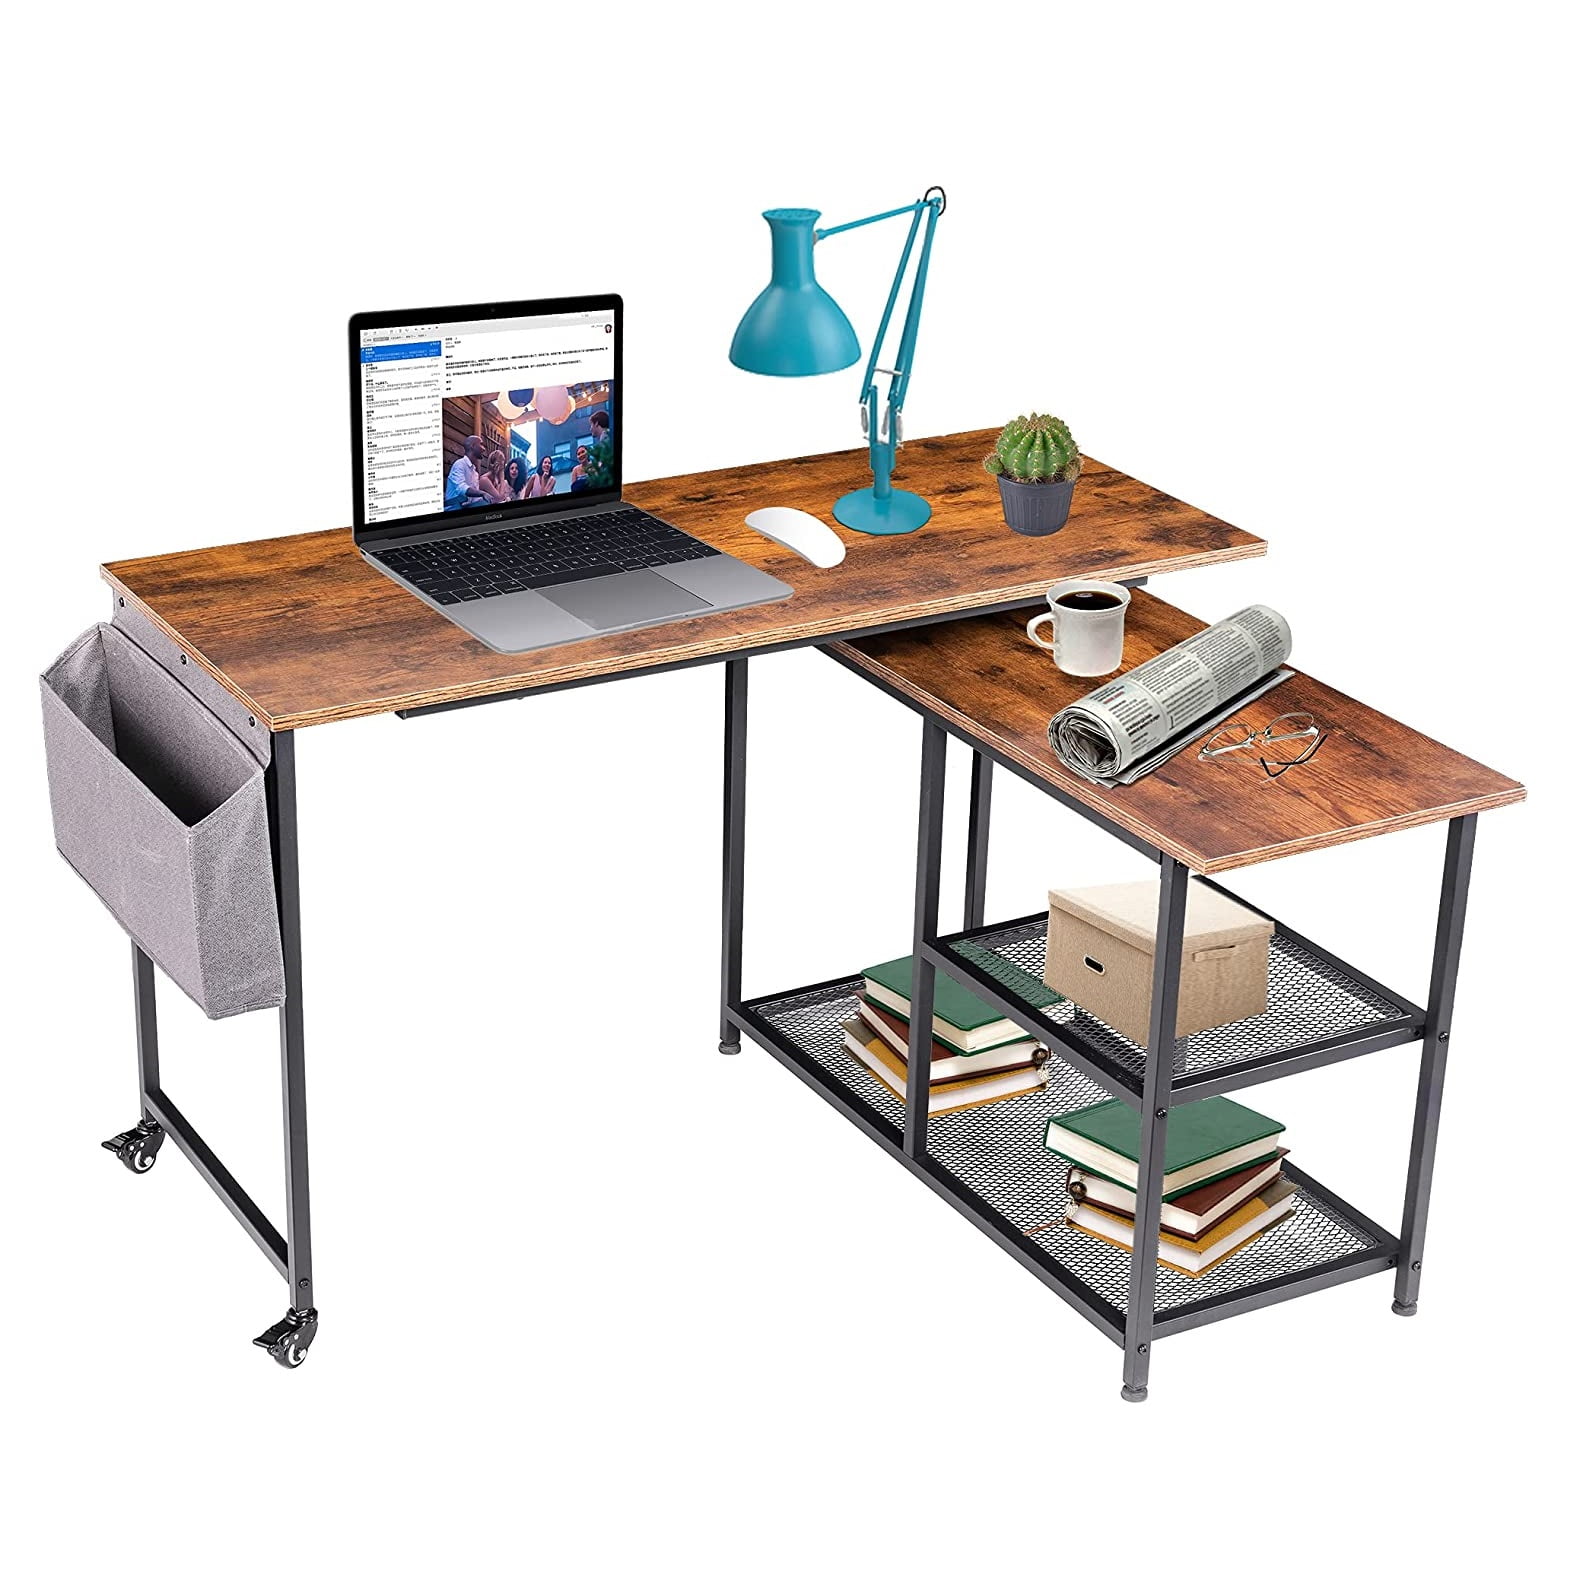 Lifefair L-Shaped Computer Desk Corner Home Office Desks Work Table with Multiple Shelves Drawer Brown